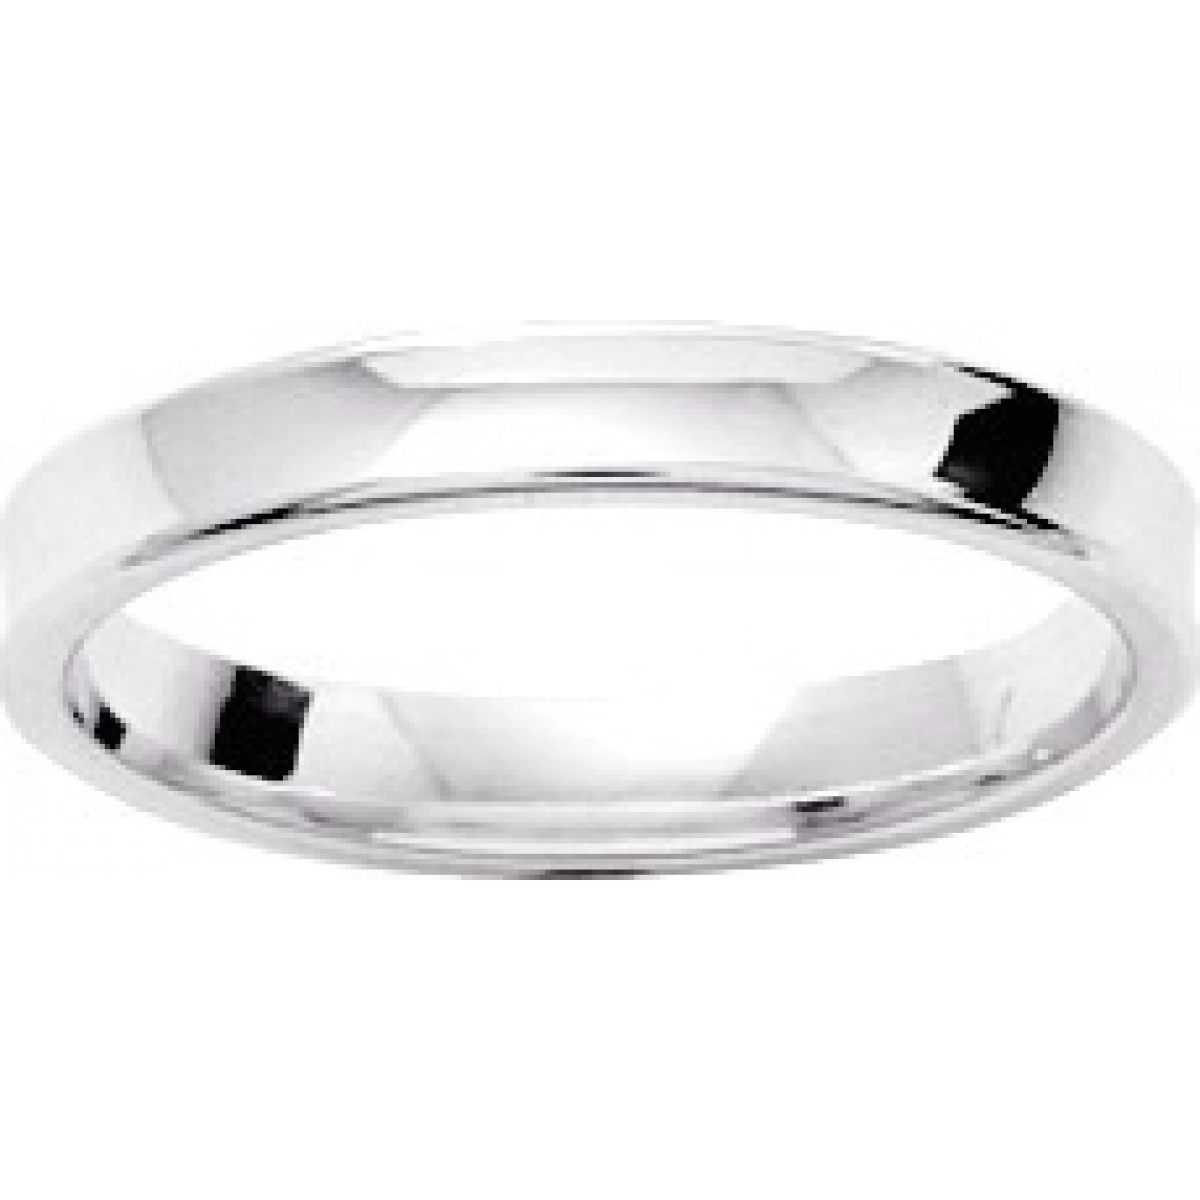 Wedding ring 3mm rh925 Silver - Size: 52  Lua Blanca  307788.12